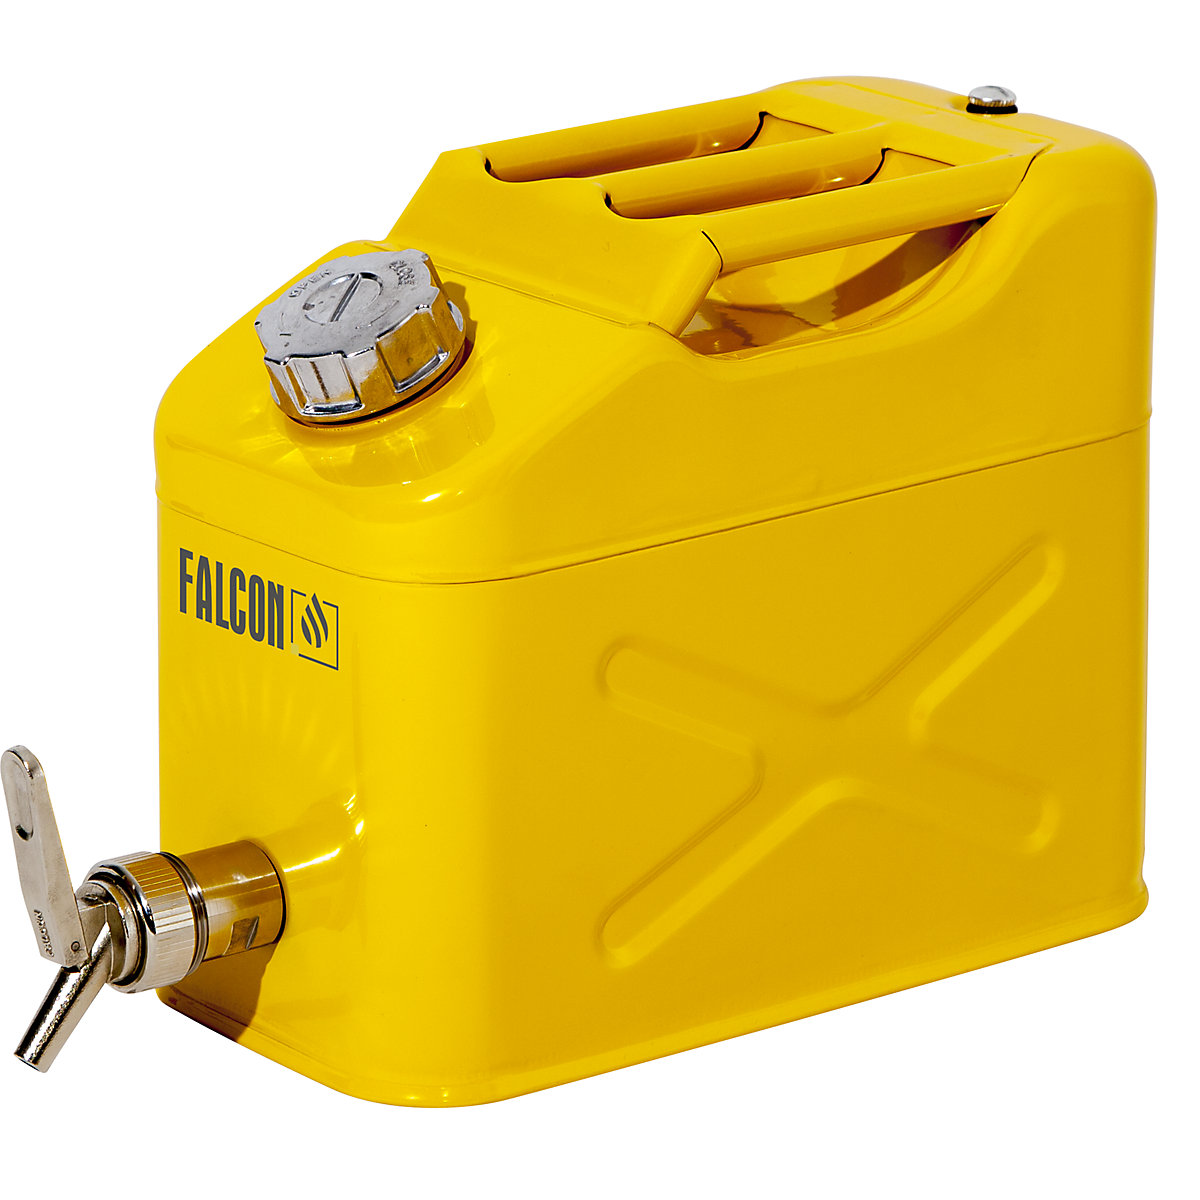 FALCON – Canistră de siguranță cu robinet pentru dozare fină, tablă de oțel, capacitate 10 l, minimum 3 buc.